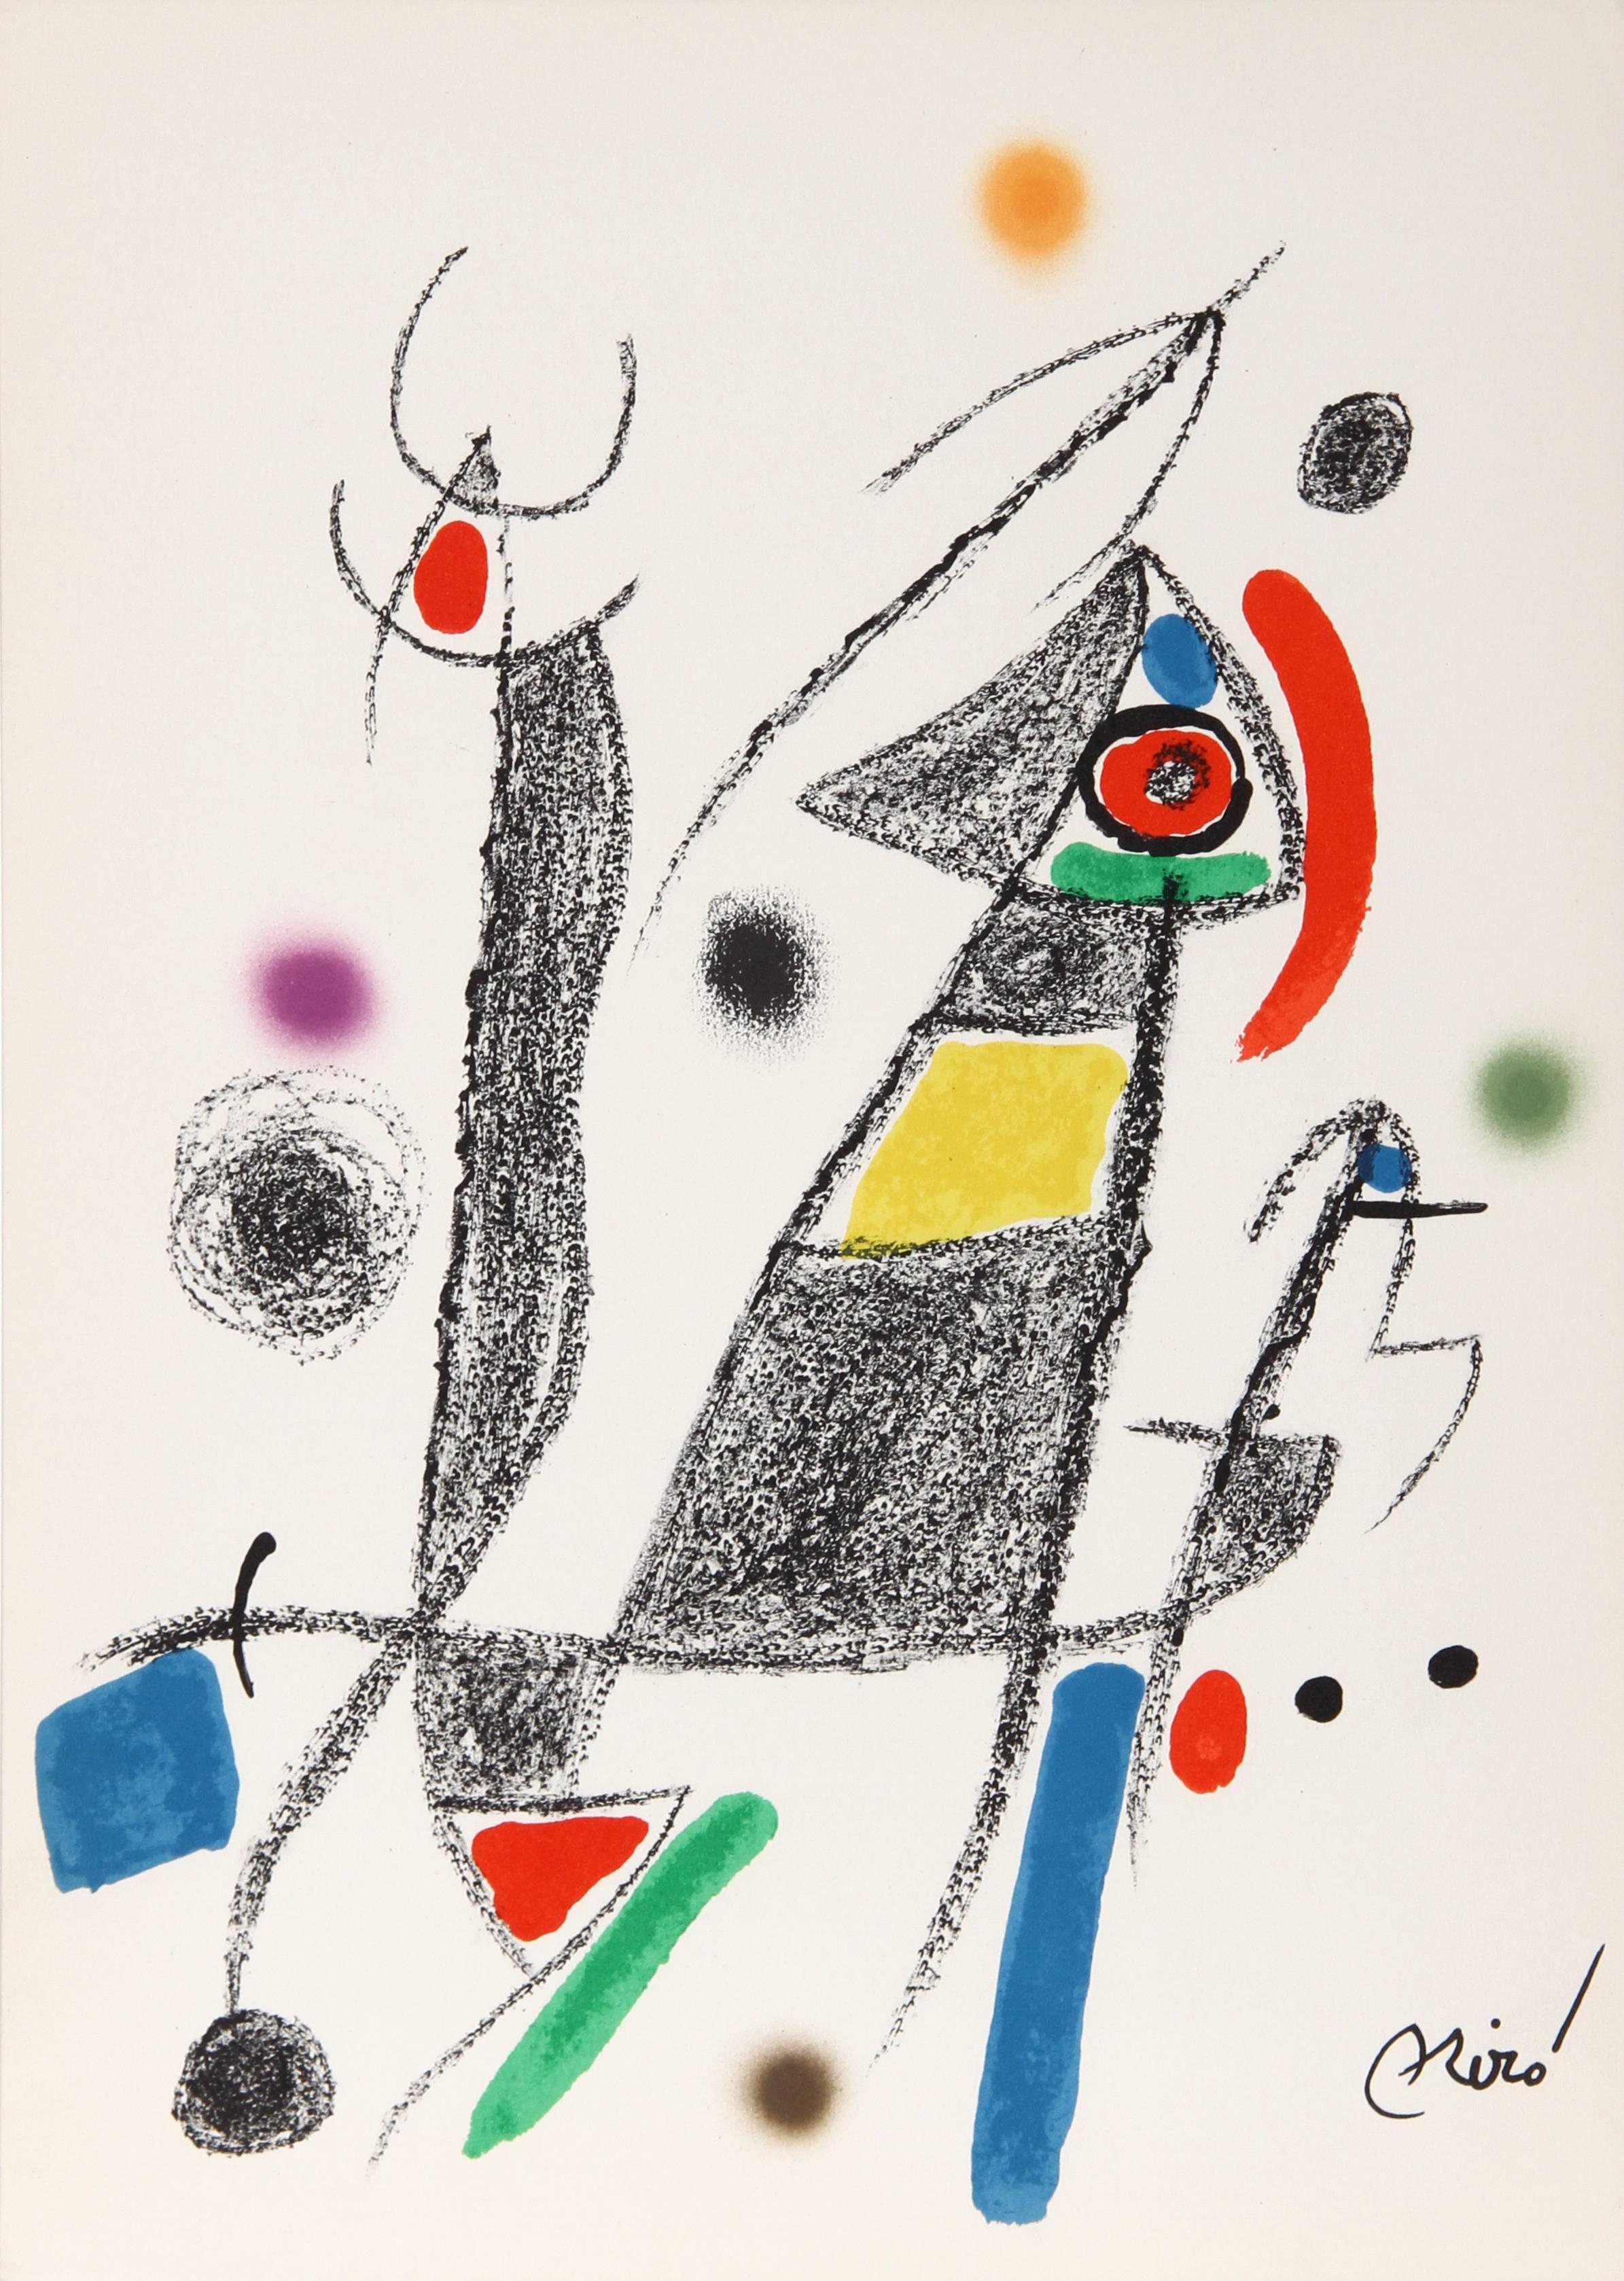 Maravillas mit Variaciones Acrosticas im Jardin de Miro (Number 8) – Print von Joan Miró